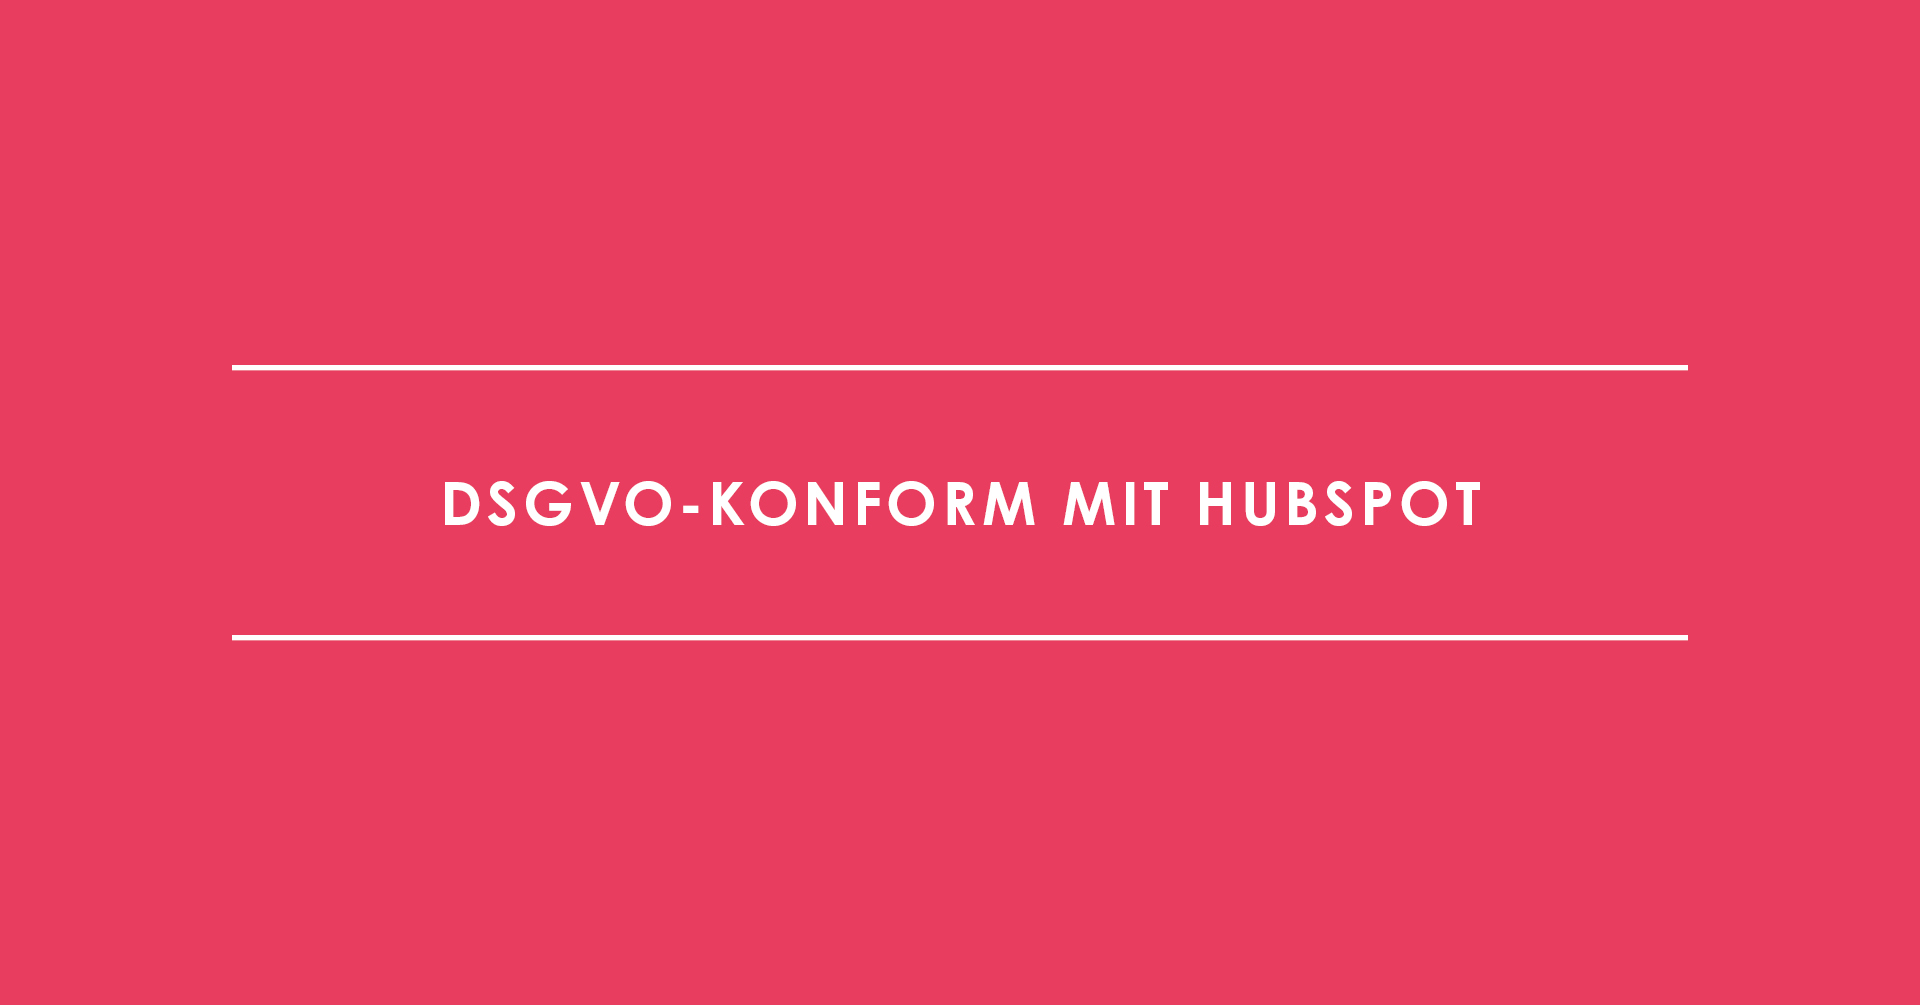 DSGVO-konform mit HubSpot